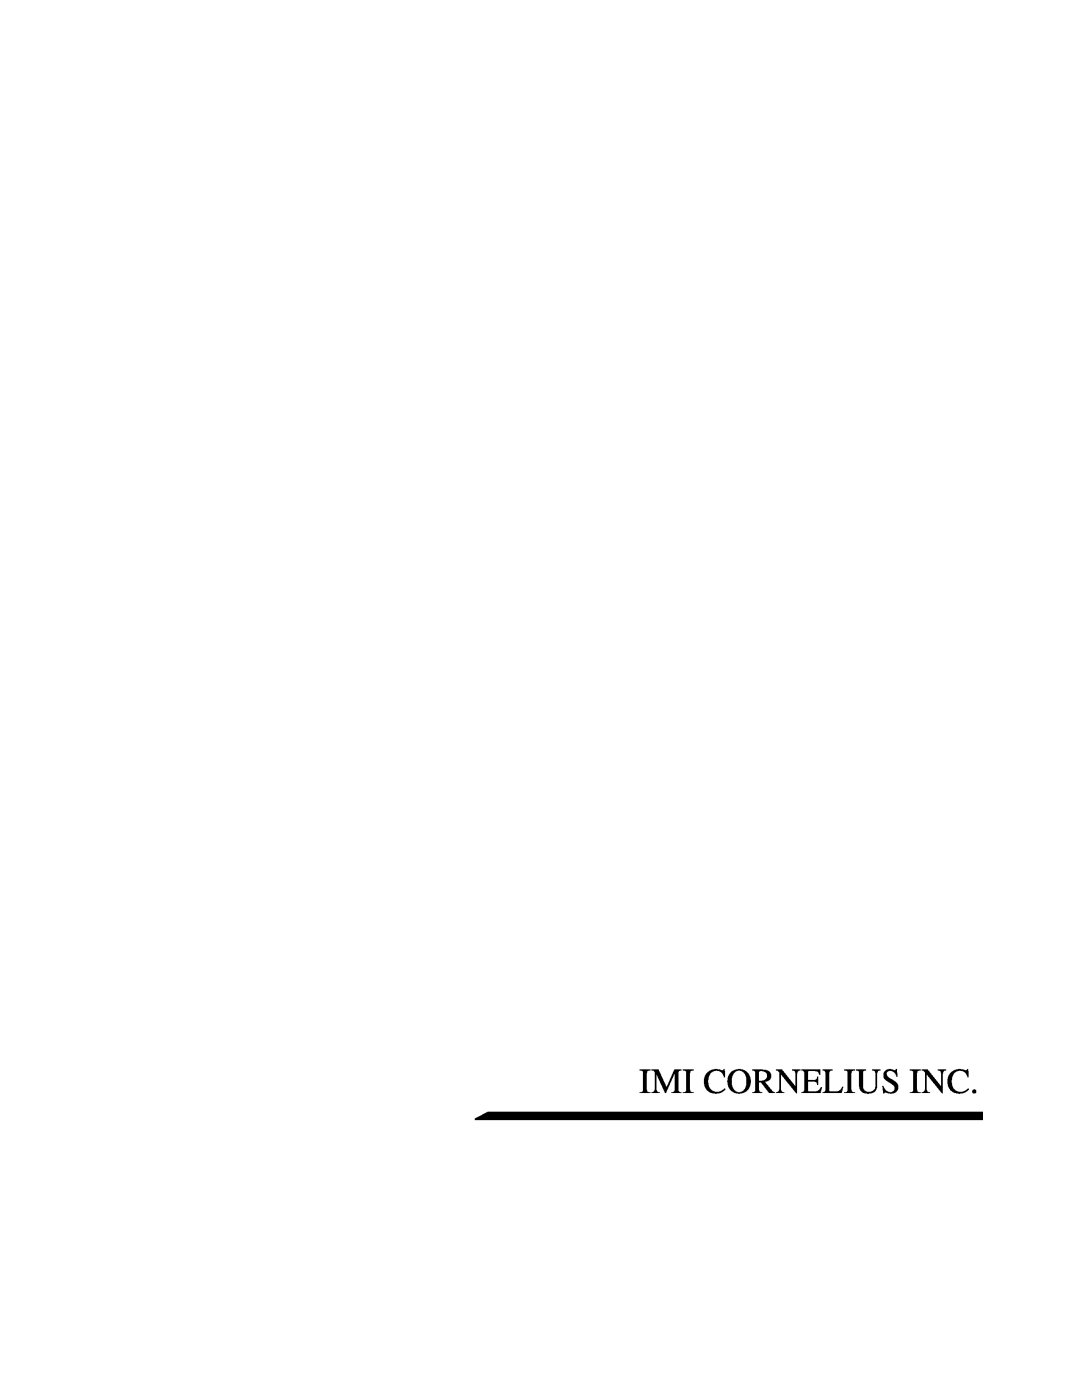 Cornelius ED-250 BCP installation manual Imi Cornelius Inc 